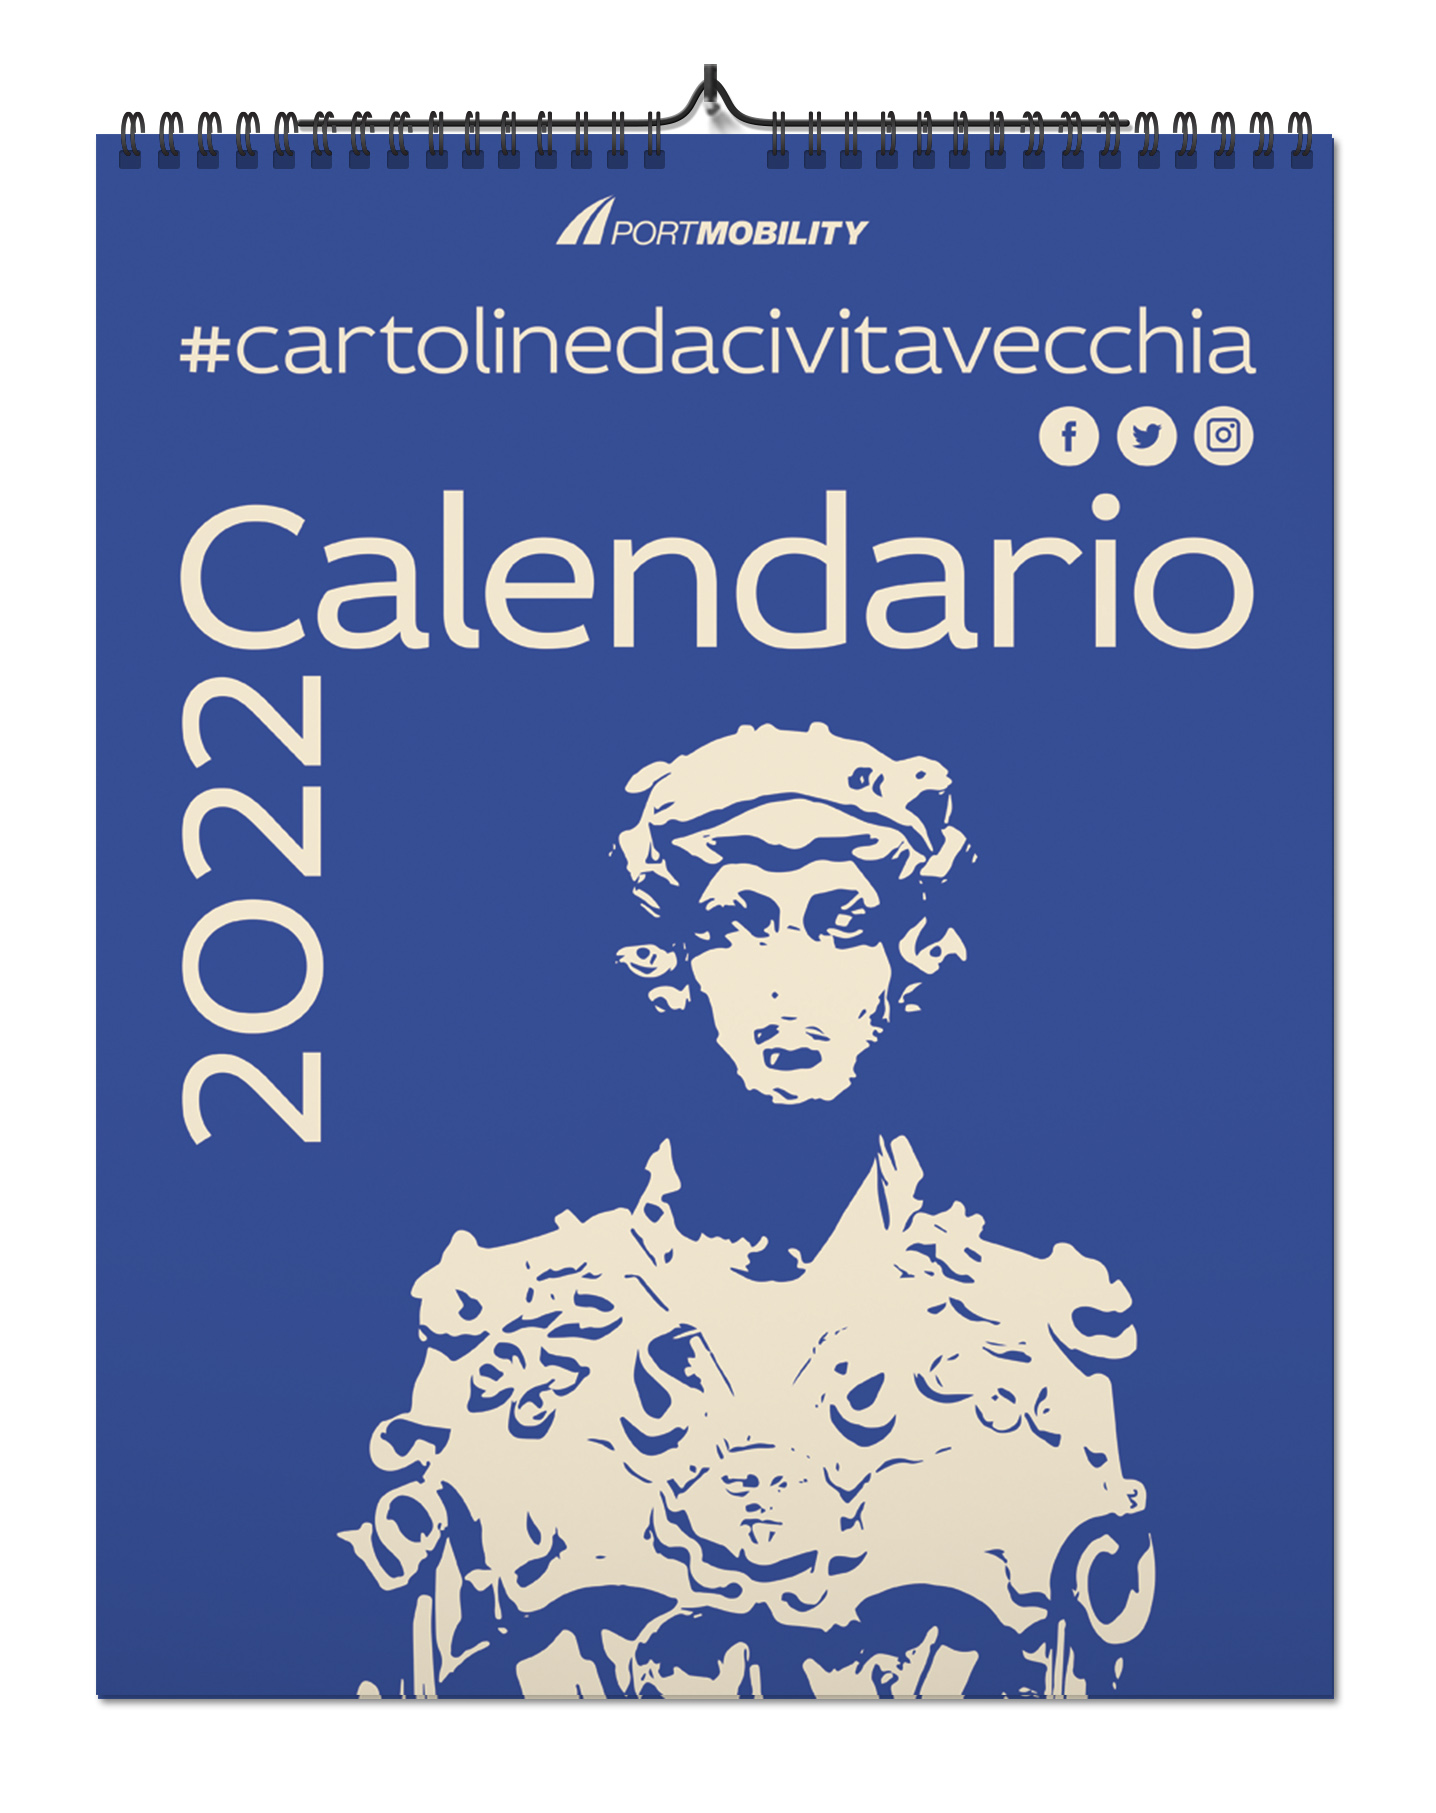 Cartoline da Civitavecchia 2022: la copertina del calendario